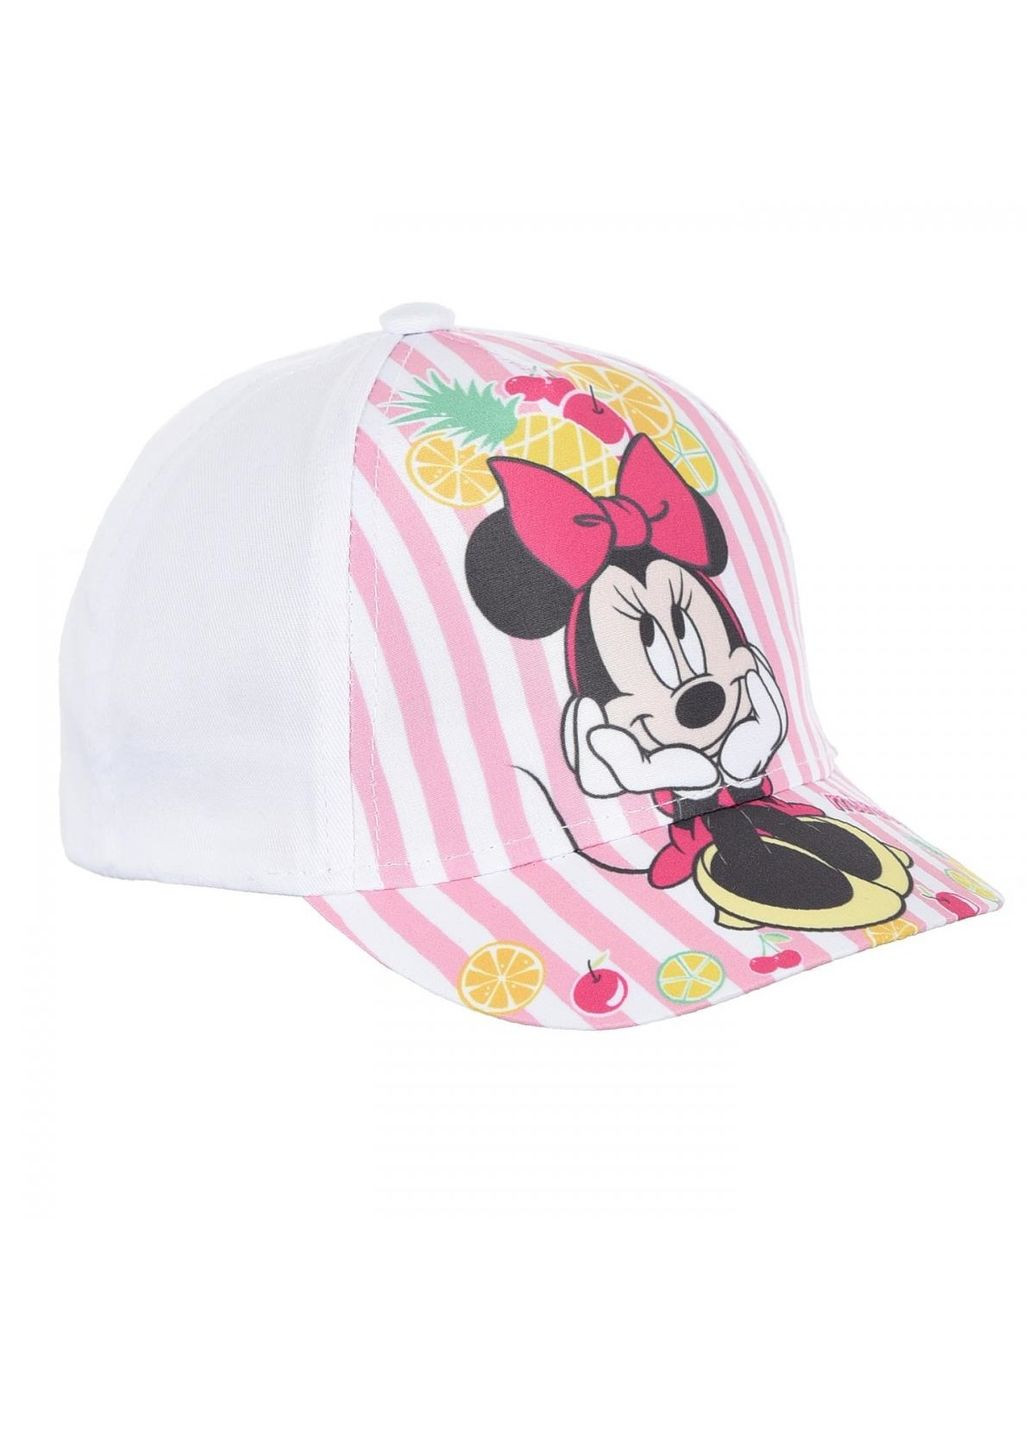 Кепка Minnie Mouse (Минни Маус) UE40981 EU Disney кепка (290252707)